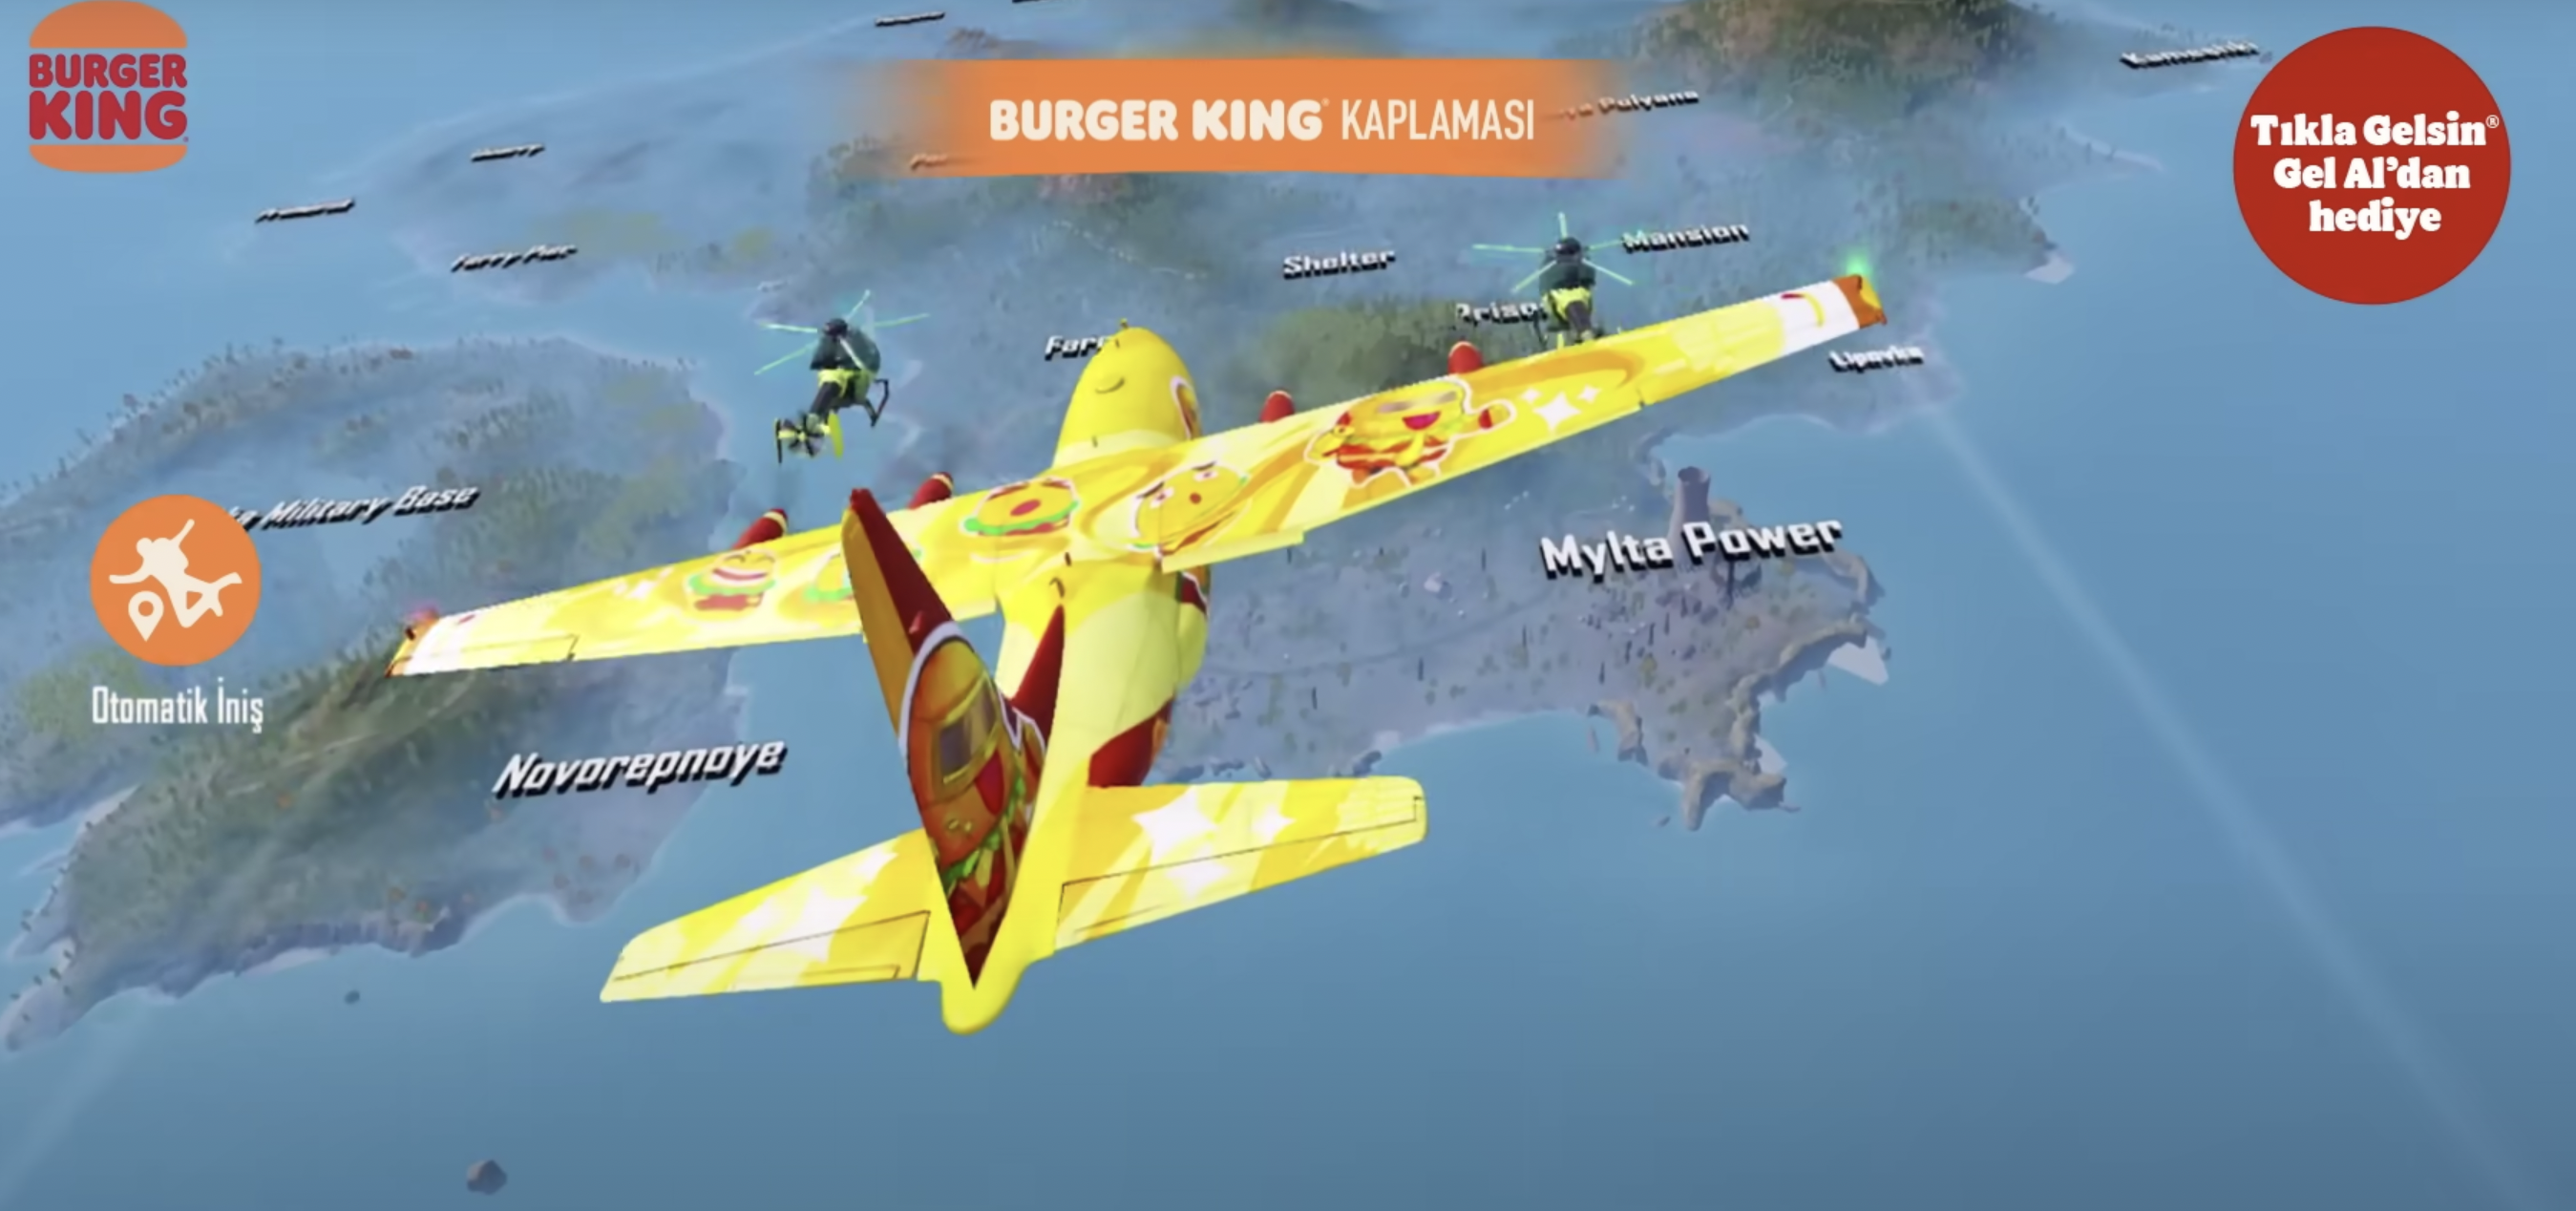 Burger King'in PUBG Mobile King Menüsü: Lezzet ve Oyun Tutkunları Buluşuyor!